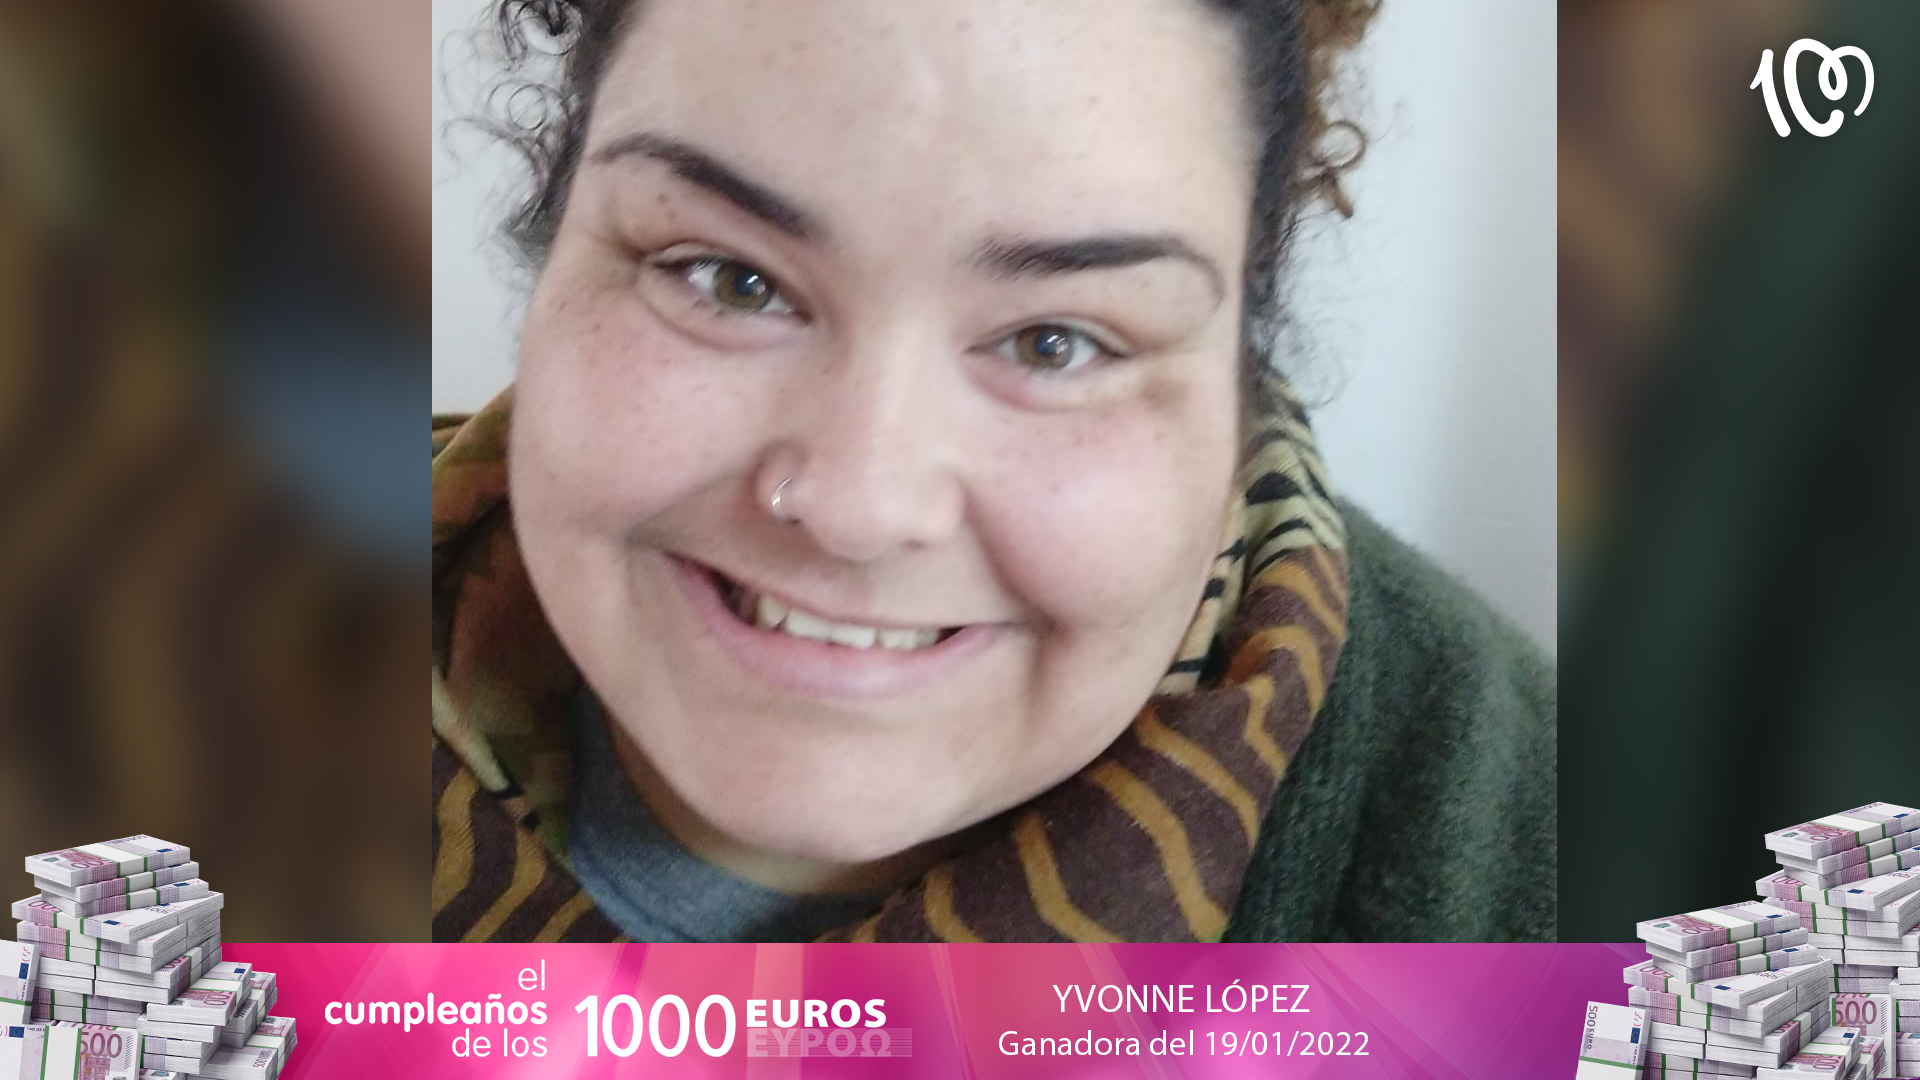 Yvonne se ha llevado 1.000 euros: "He gritado más que cuando nací"